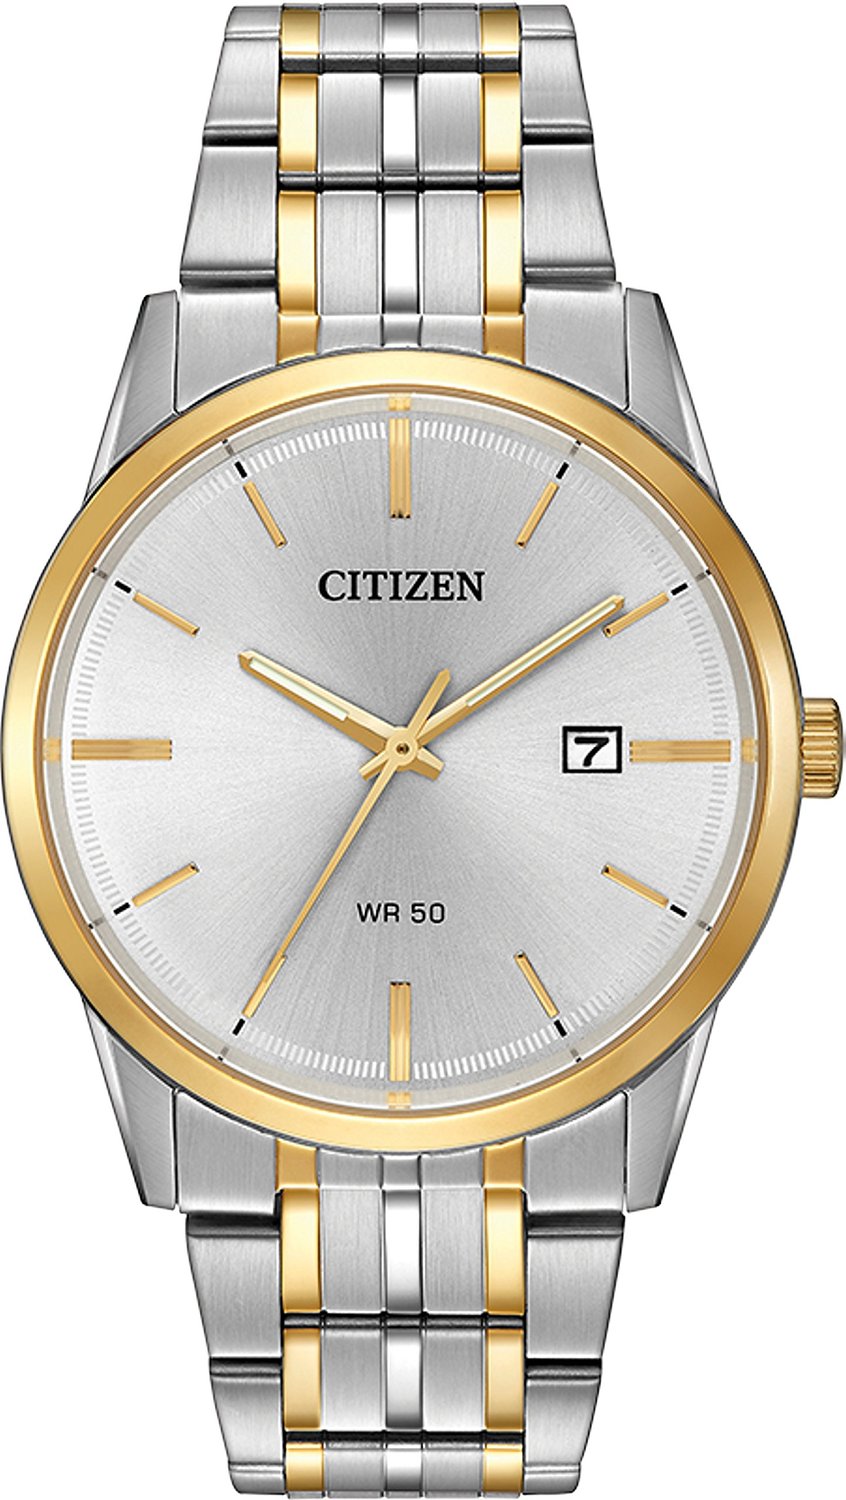 Đồng hồ đeo tay BI5004-51A có mặt số cổ điển trắng kết hợp với kim màu vàng nổi bật, chất liệu kính cường lực giúp chống va đập, chống xước. Vòng bezel nhỏ mạ vàng cho tổng thể chiếc đồng hồ sang trọng hơn